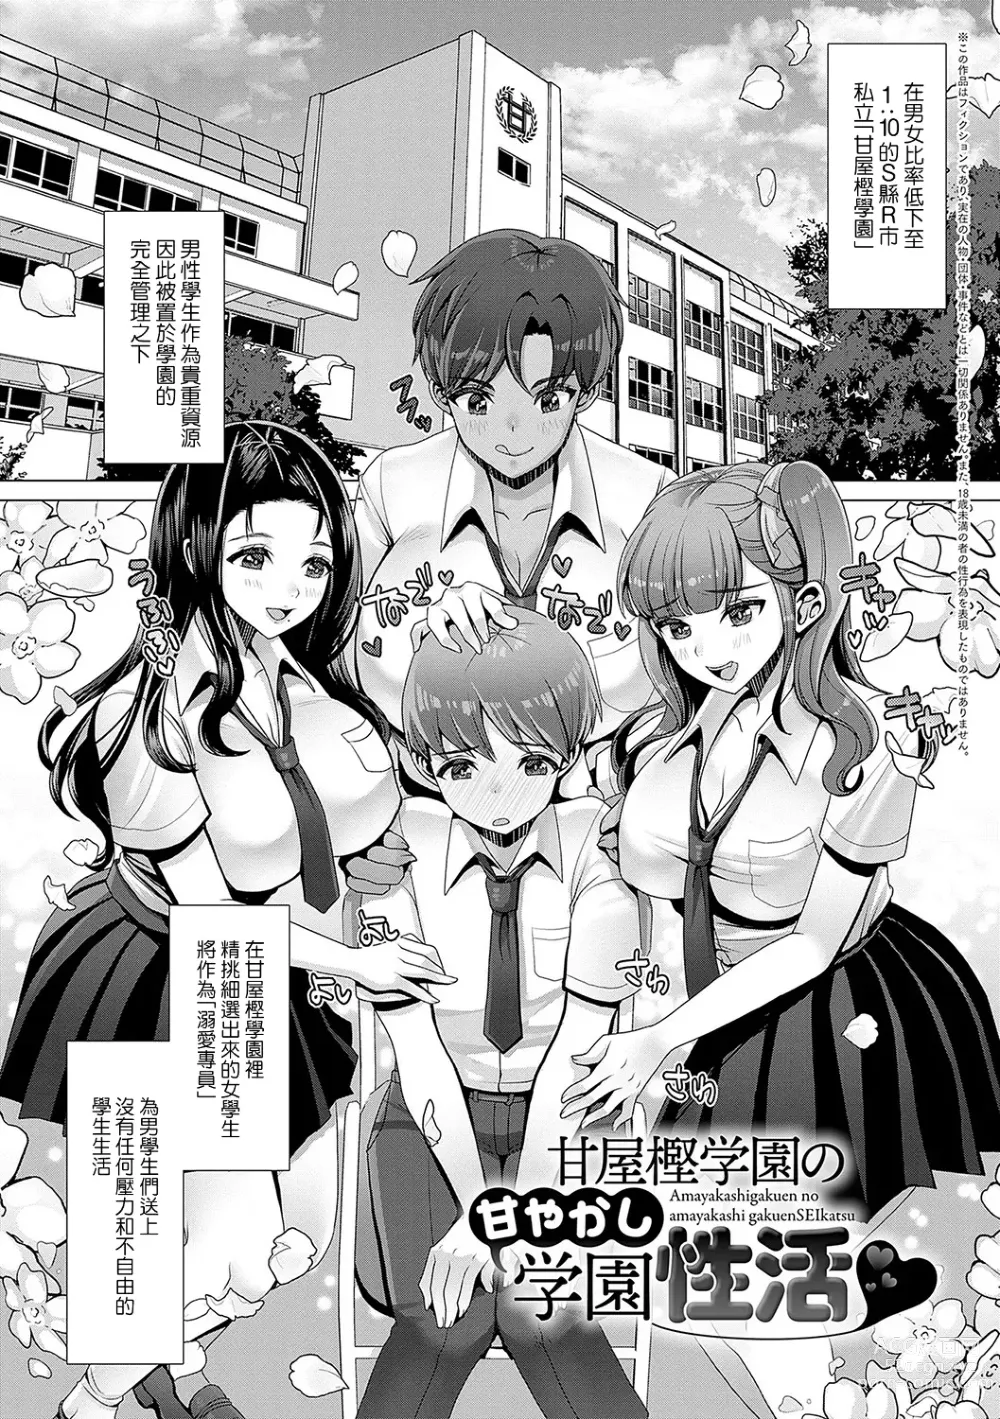 Page 1 of manga Amayakashi Gakuen no Amayakashi Gakuen SEIkatsu ♥